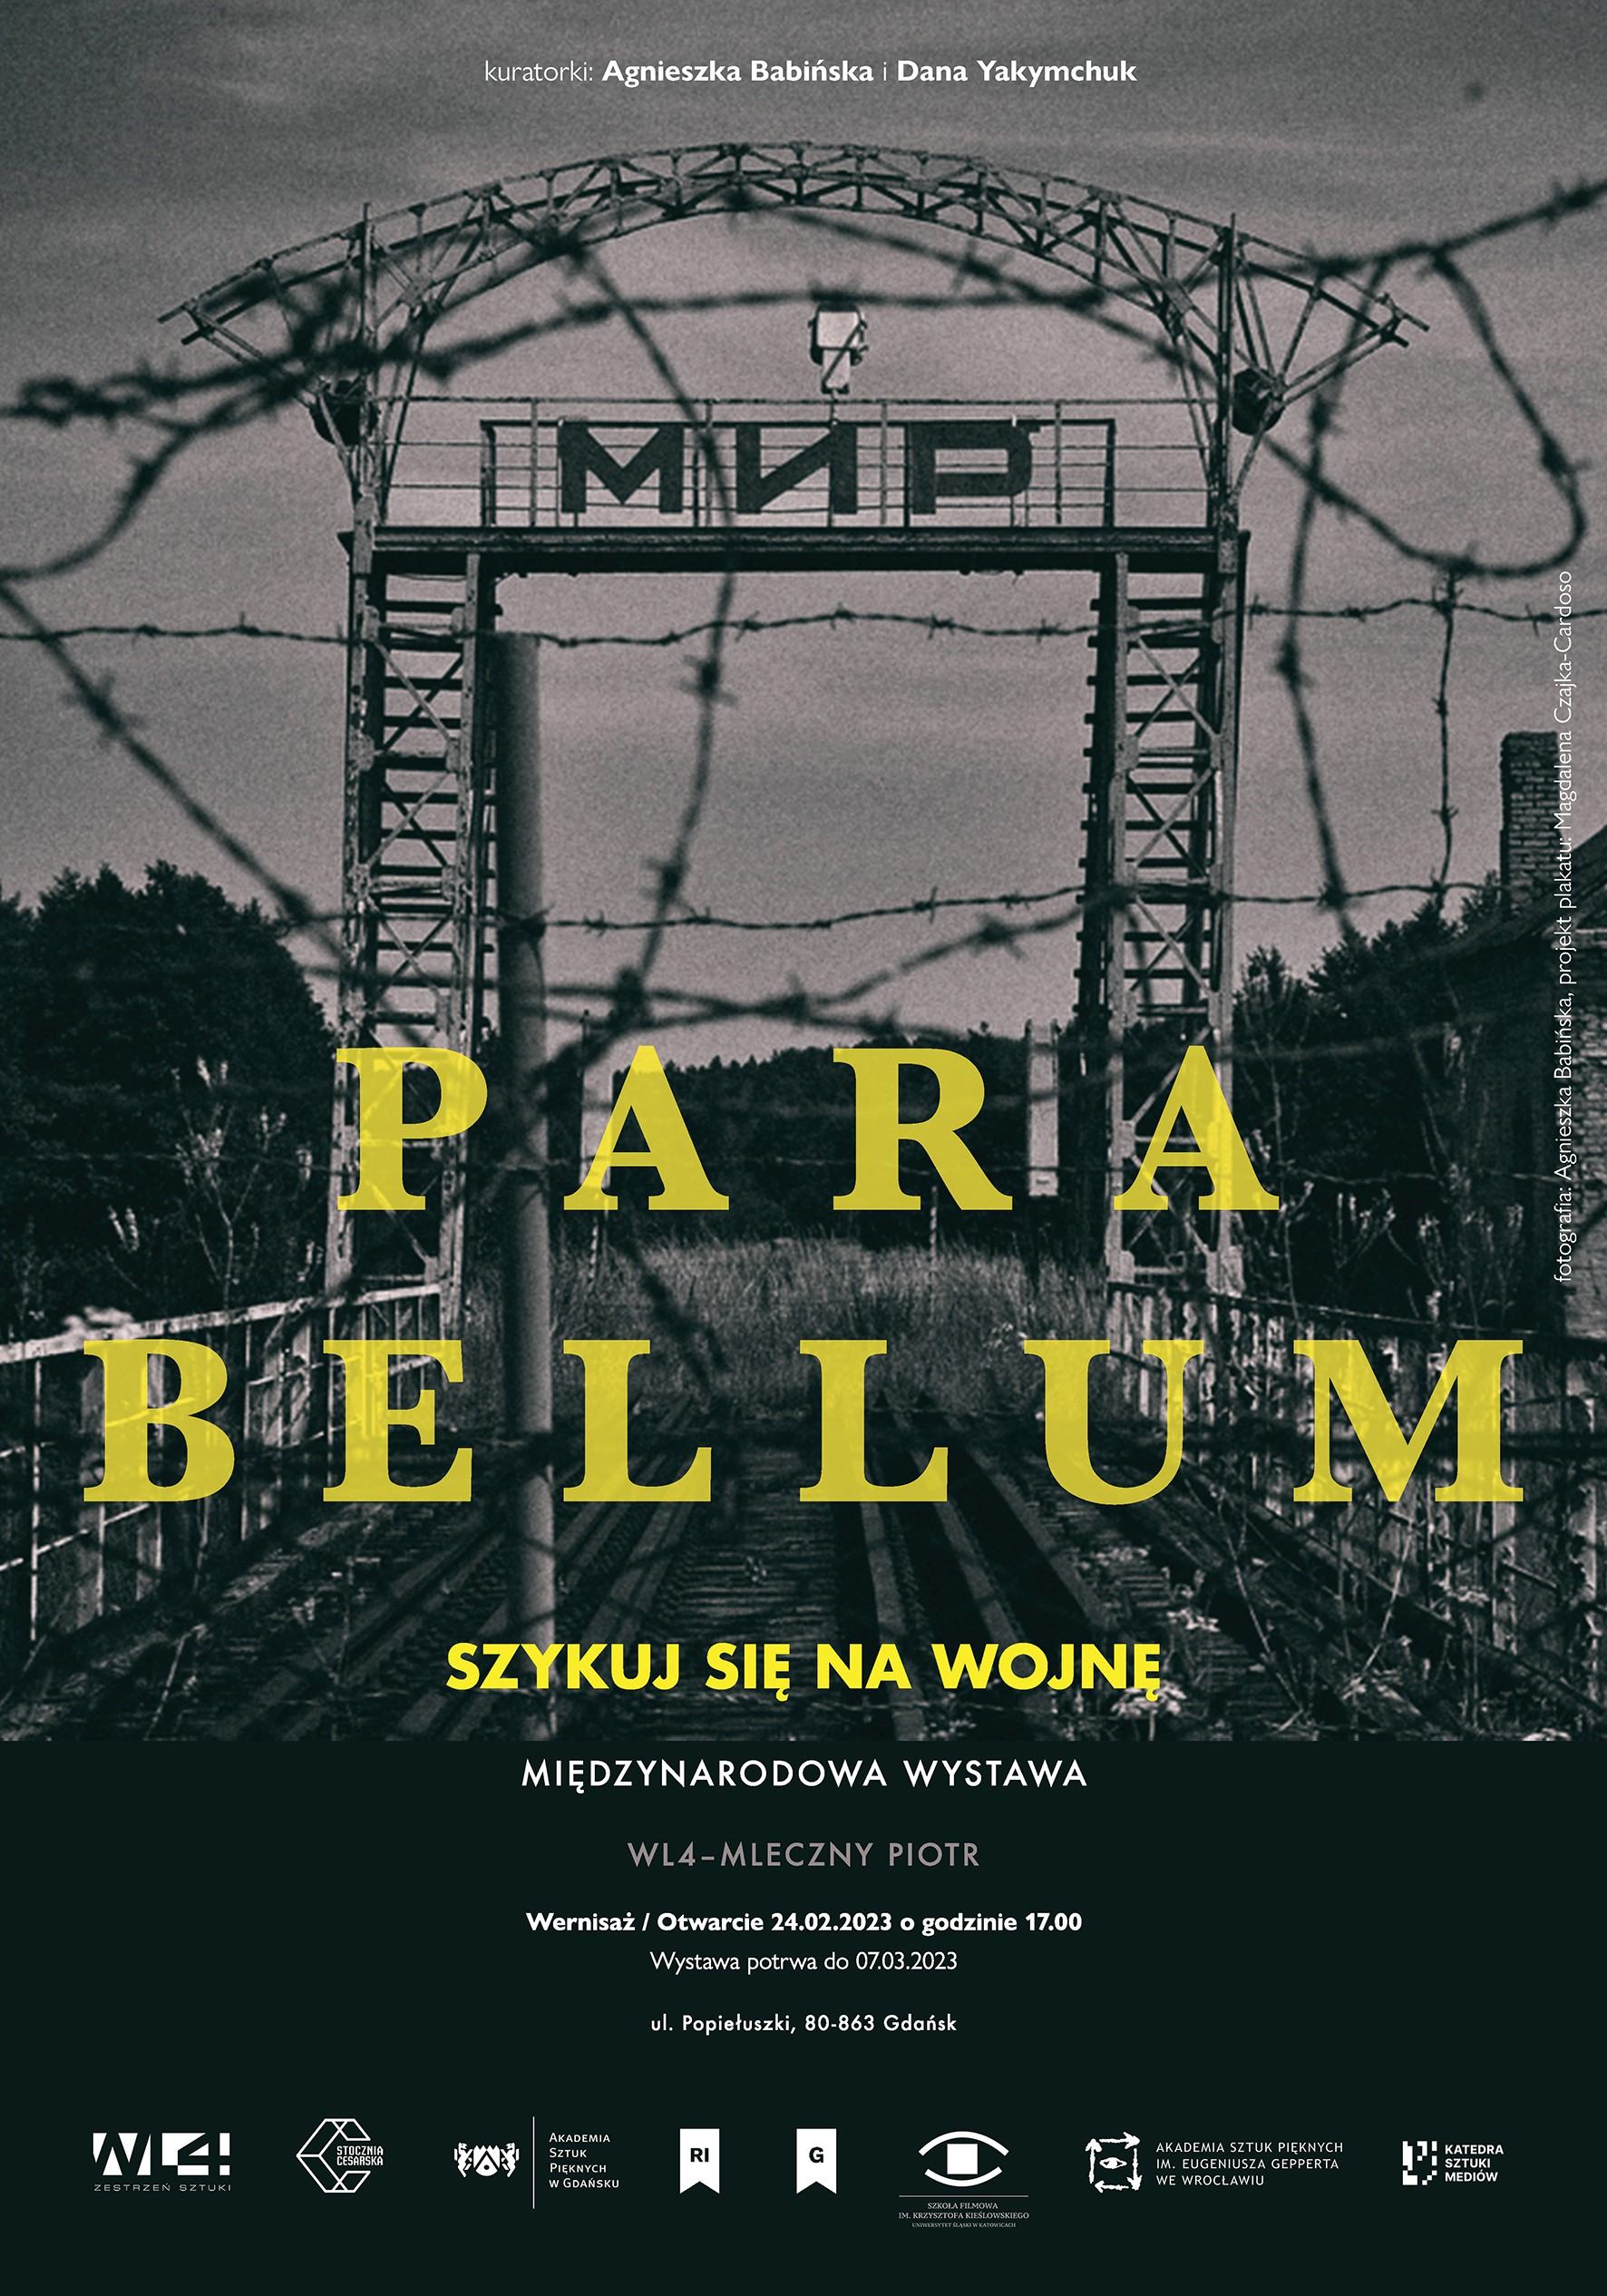 Plakat promujący międzynarodową wystawę Para bellum